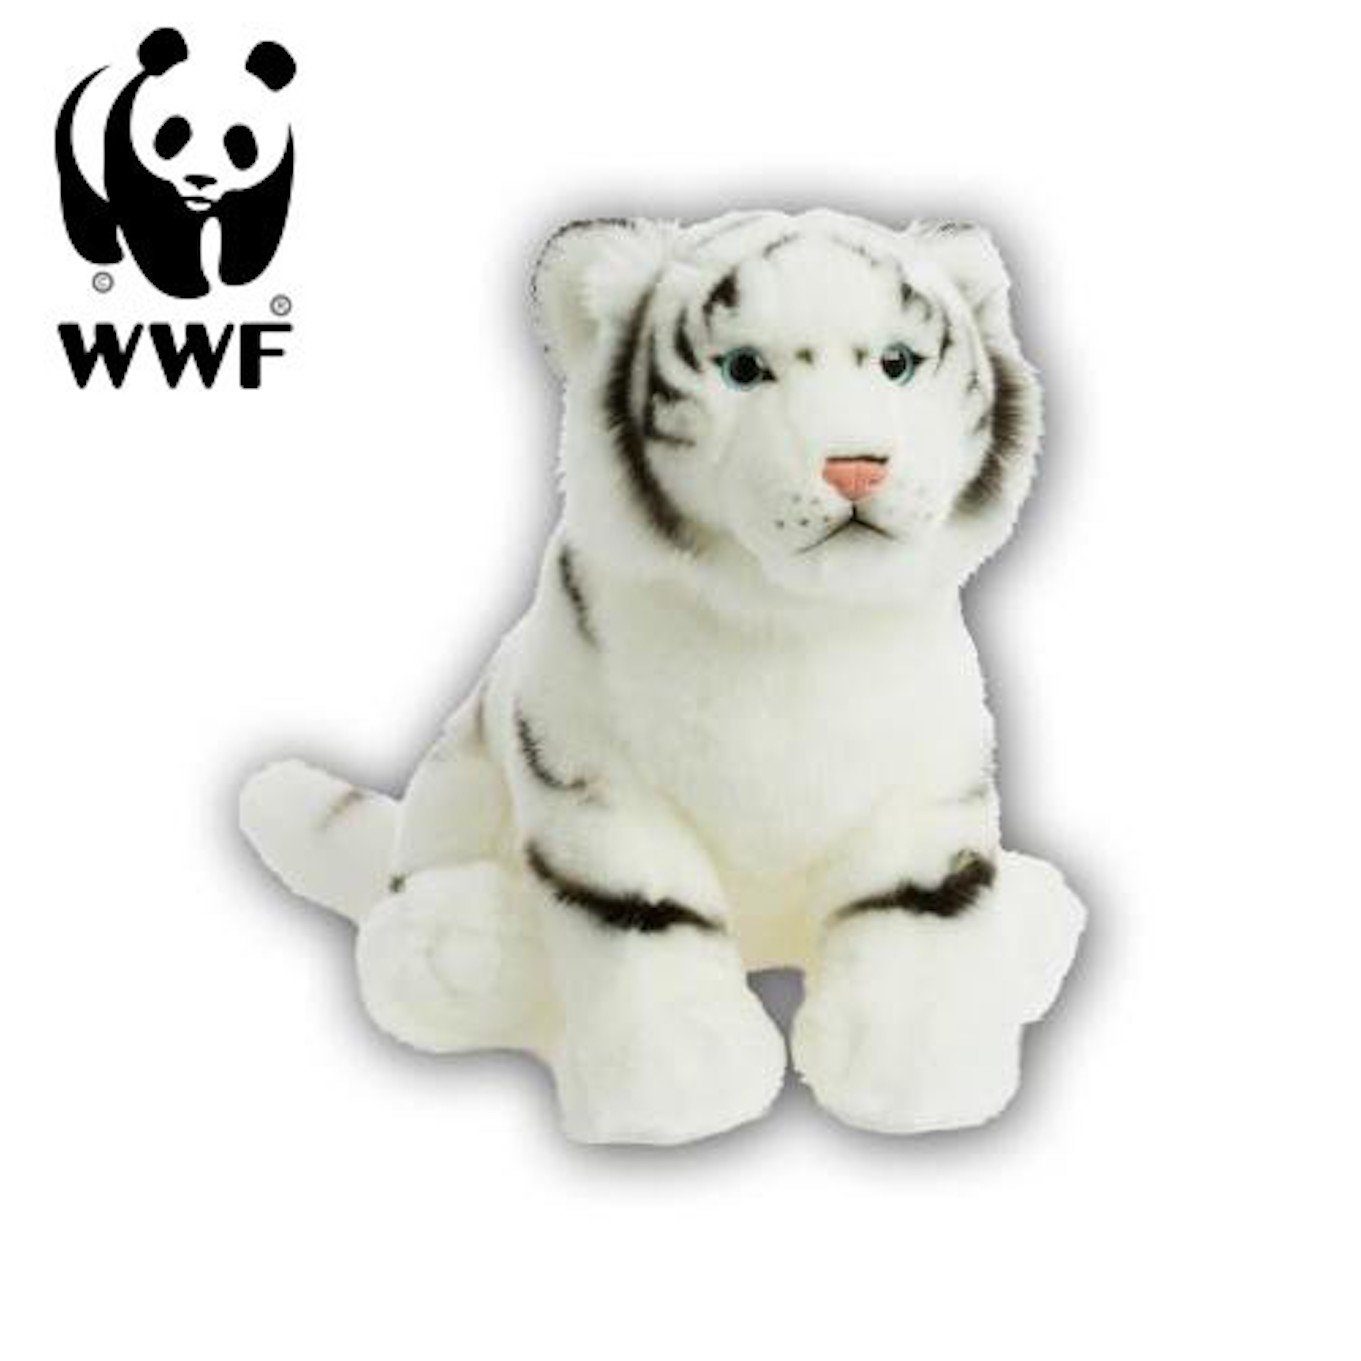 WWF Kuscheltier Plüschtier Weißer Tiger (30cm)